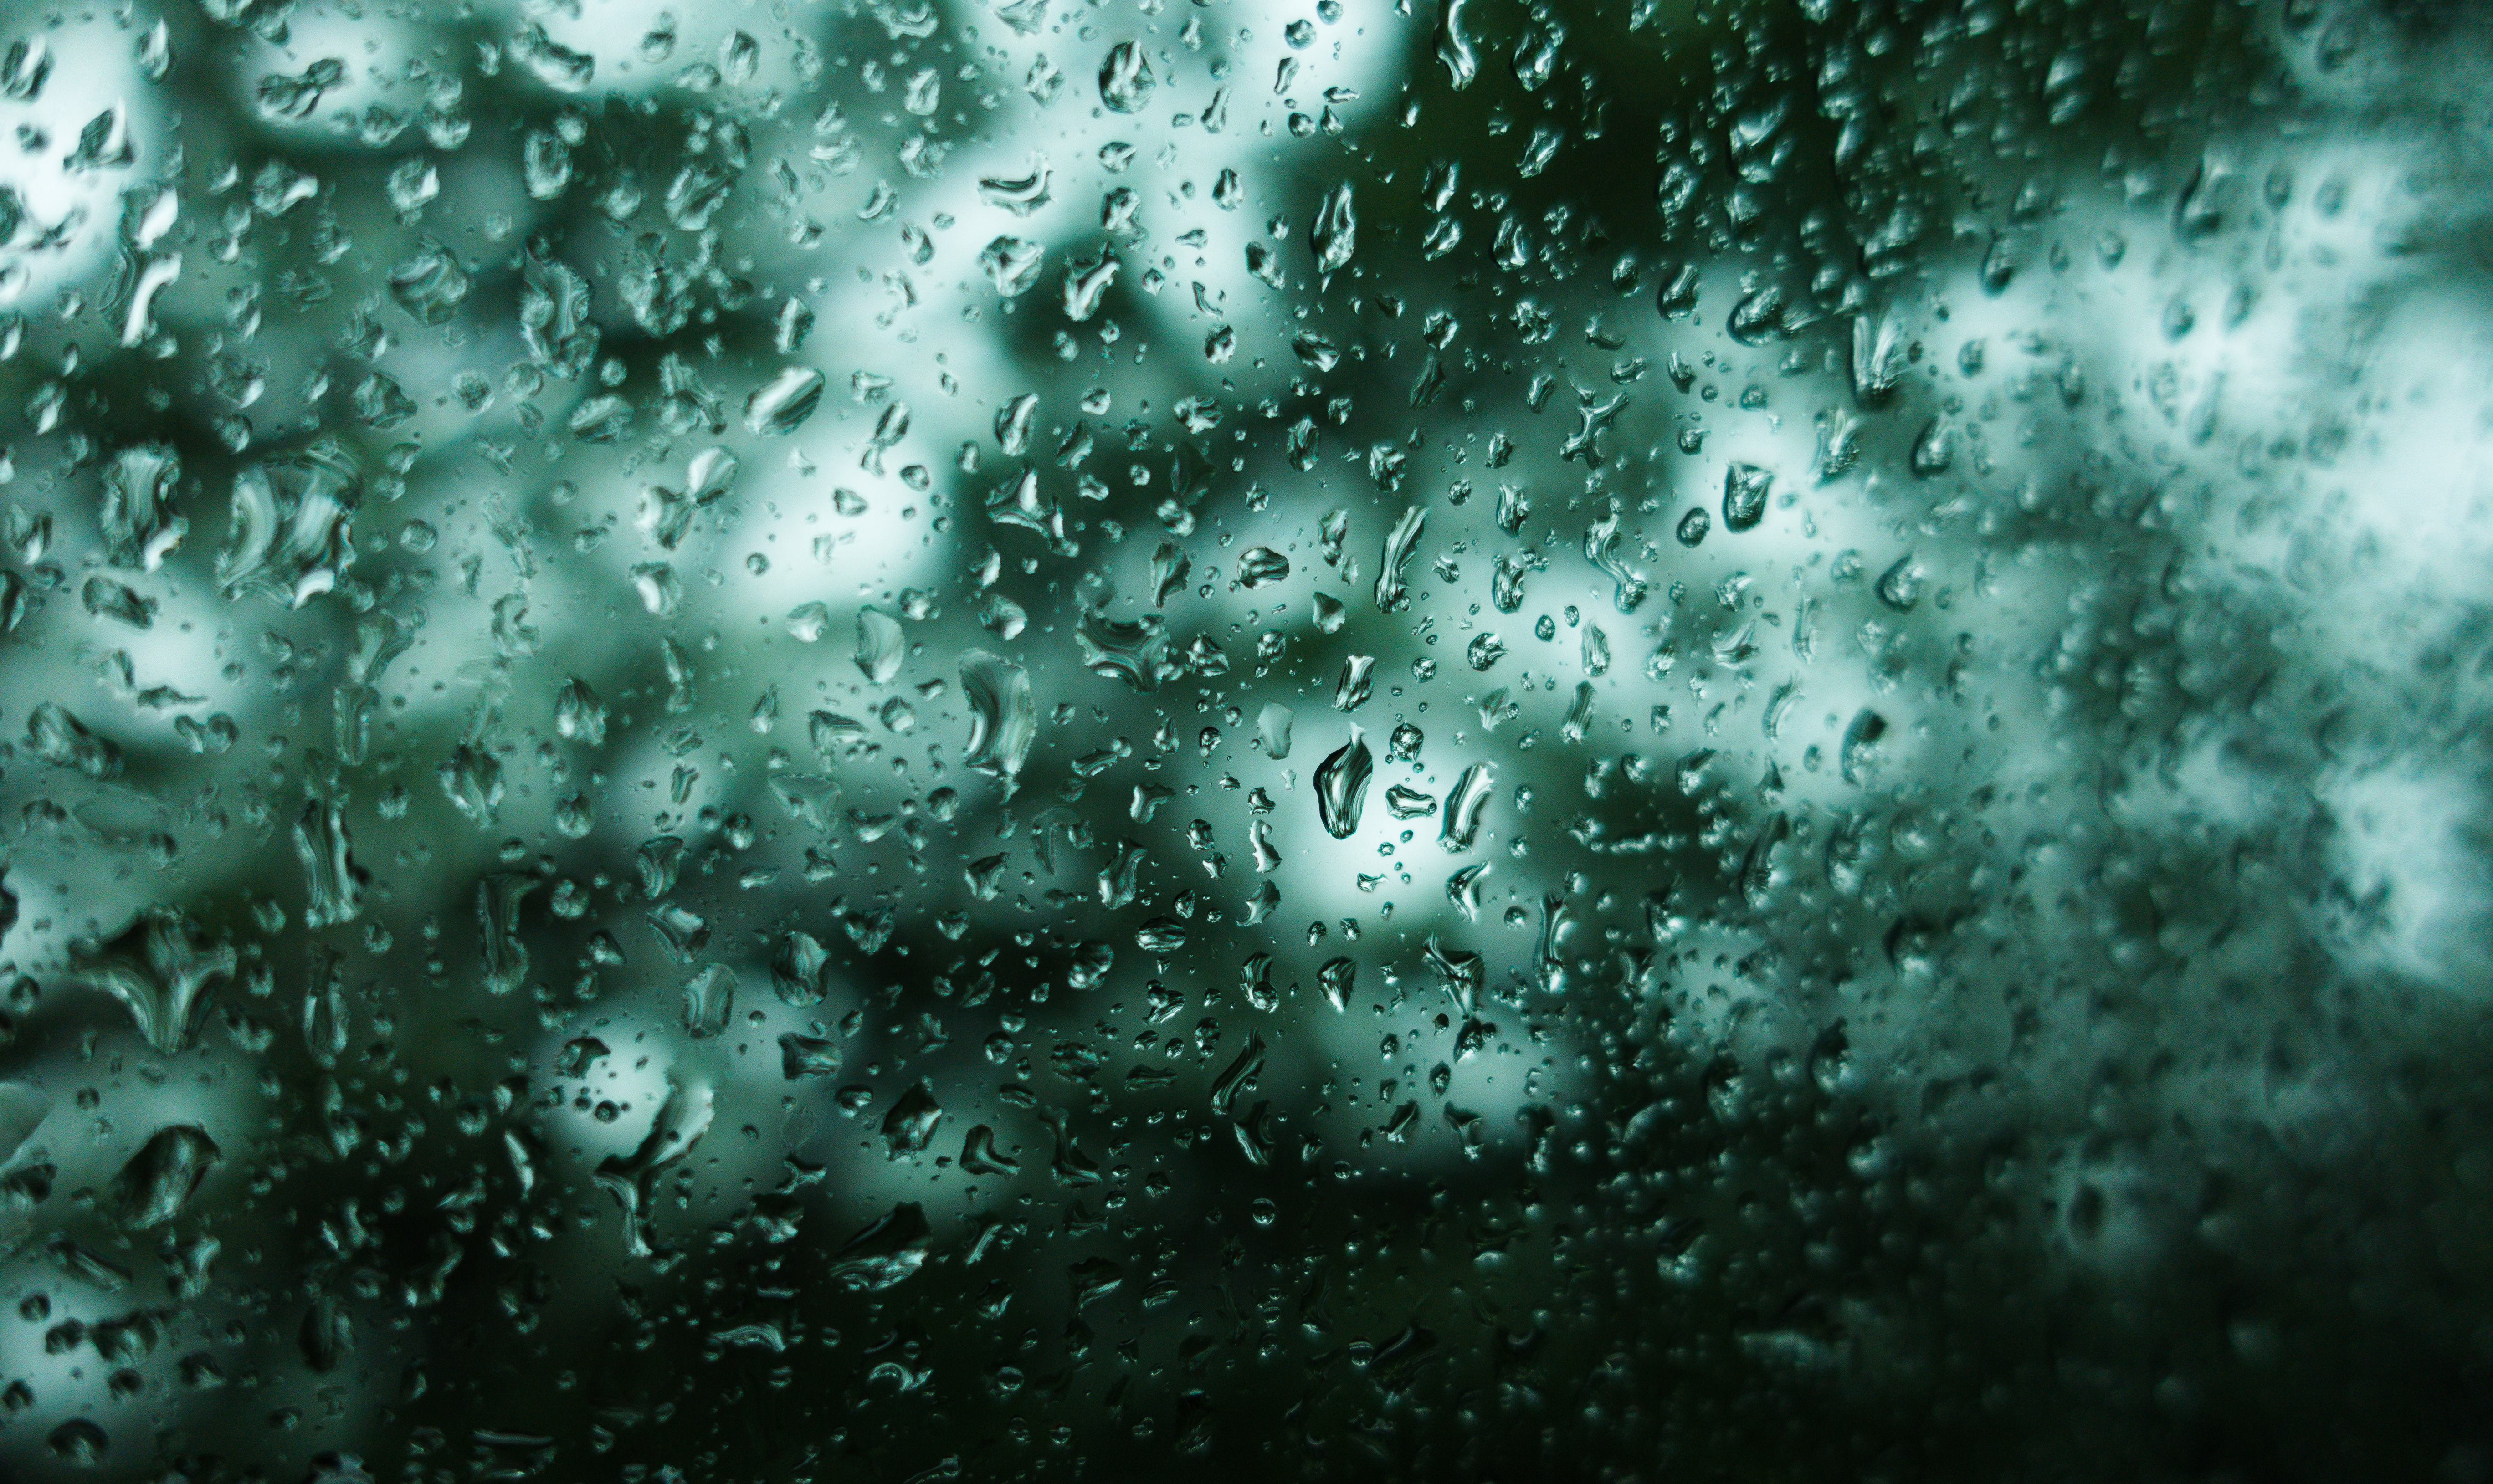 不穏な雨 深い森の中を走る窓ガラスの水滴 の写真素材 ぱくたそ